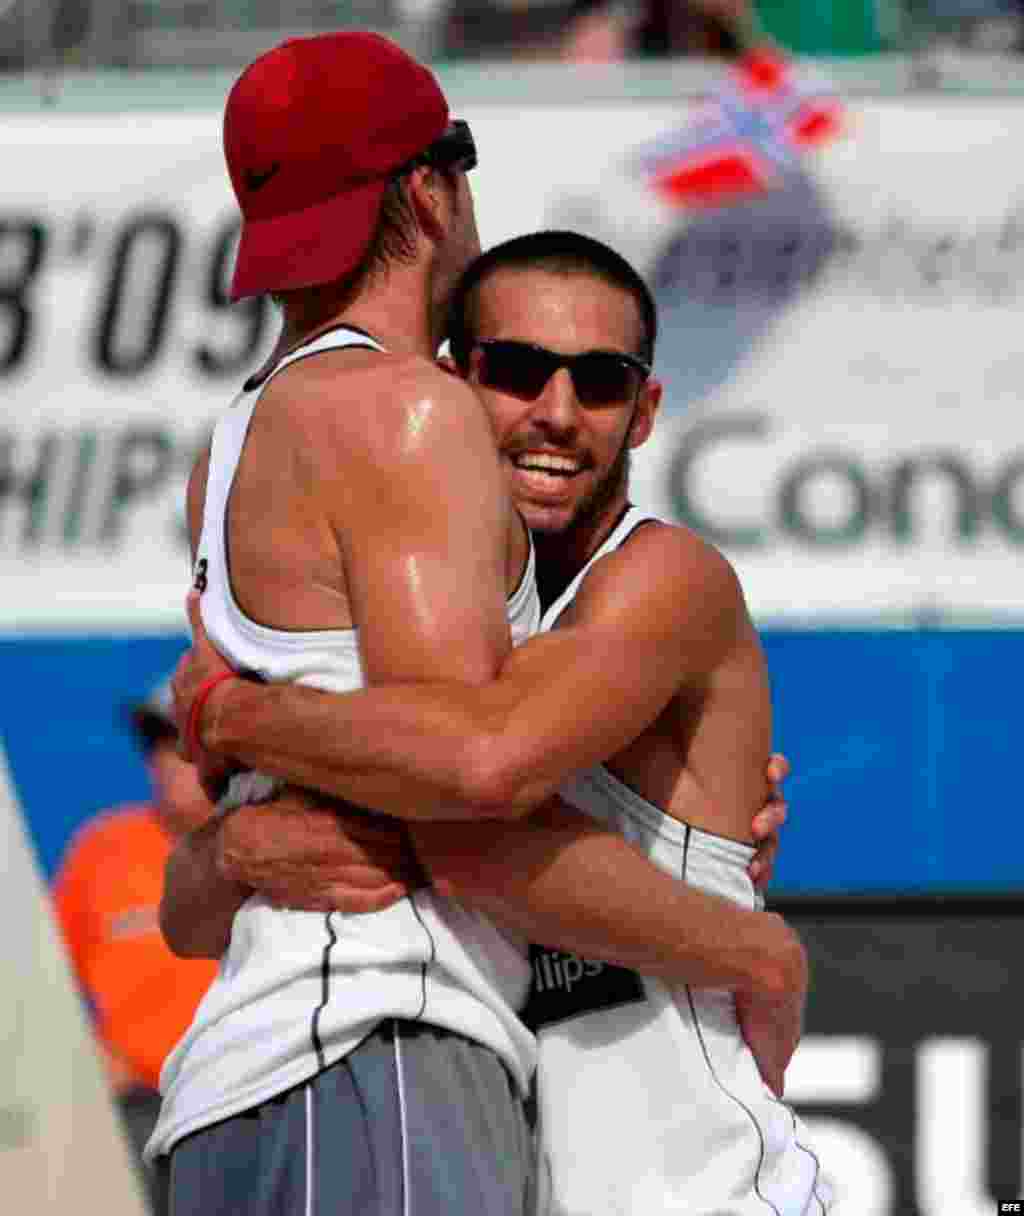 El cubano-americano Nick Lucena (voleibol de playa). Representa a Estados Unidos en los Juegos Olímpicos de Río de Janeiro.